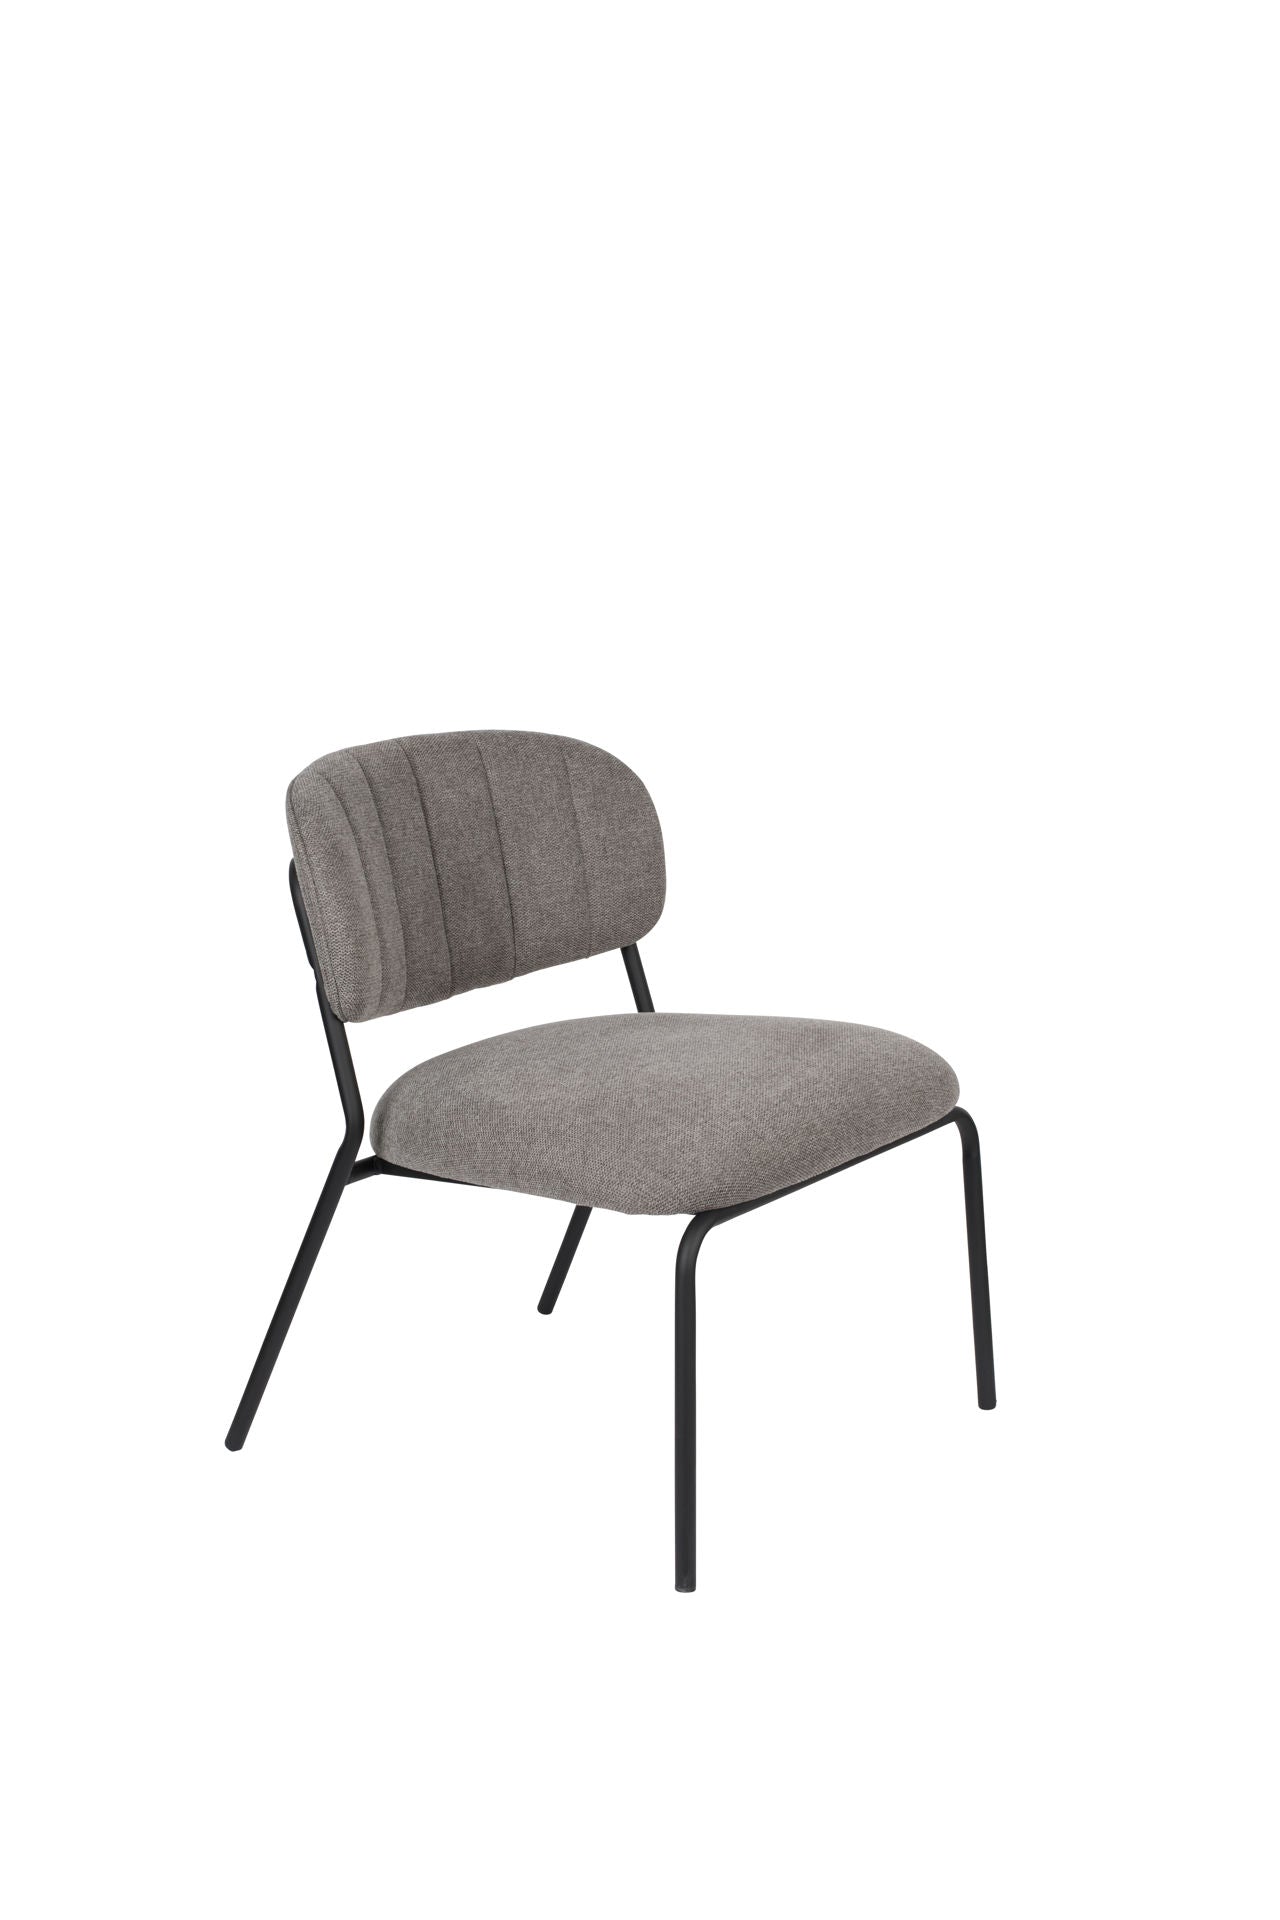 Nancy's Scotts Valley Lounge Chair 2 pièces - Industriel - Gris - Polyester, Contreplaqué, Acier - 60 cm x 56 cm x 68 cm